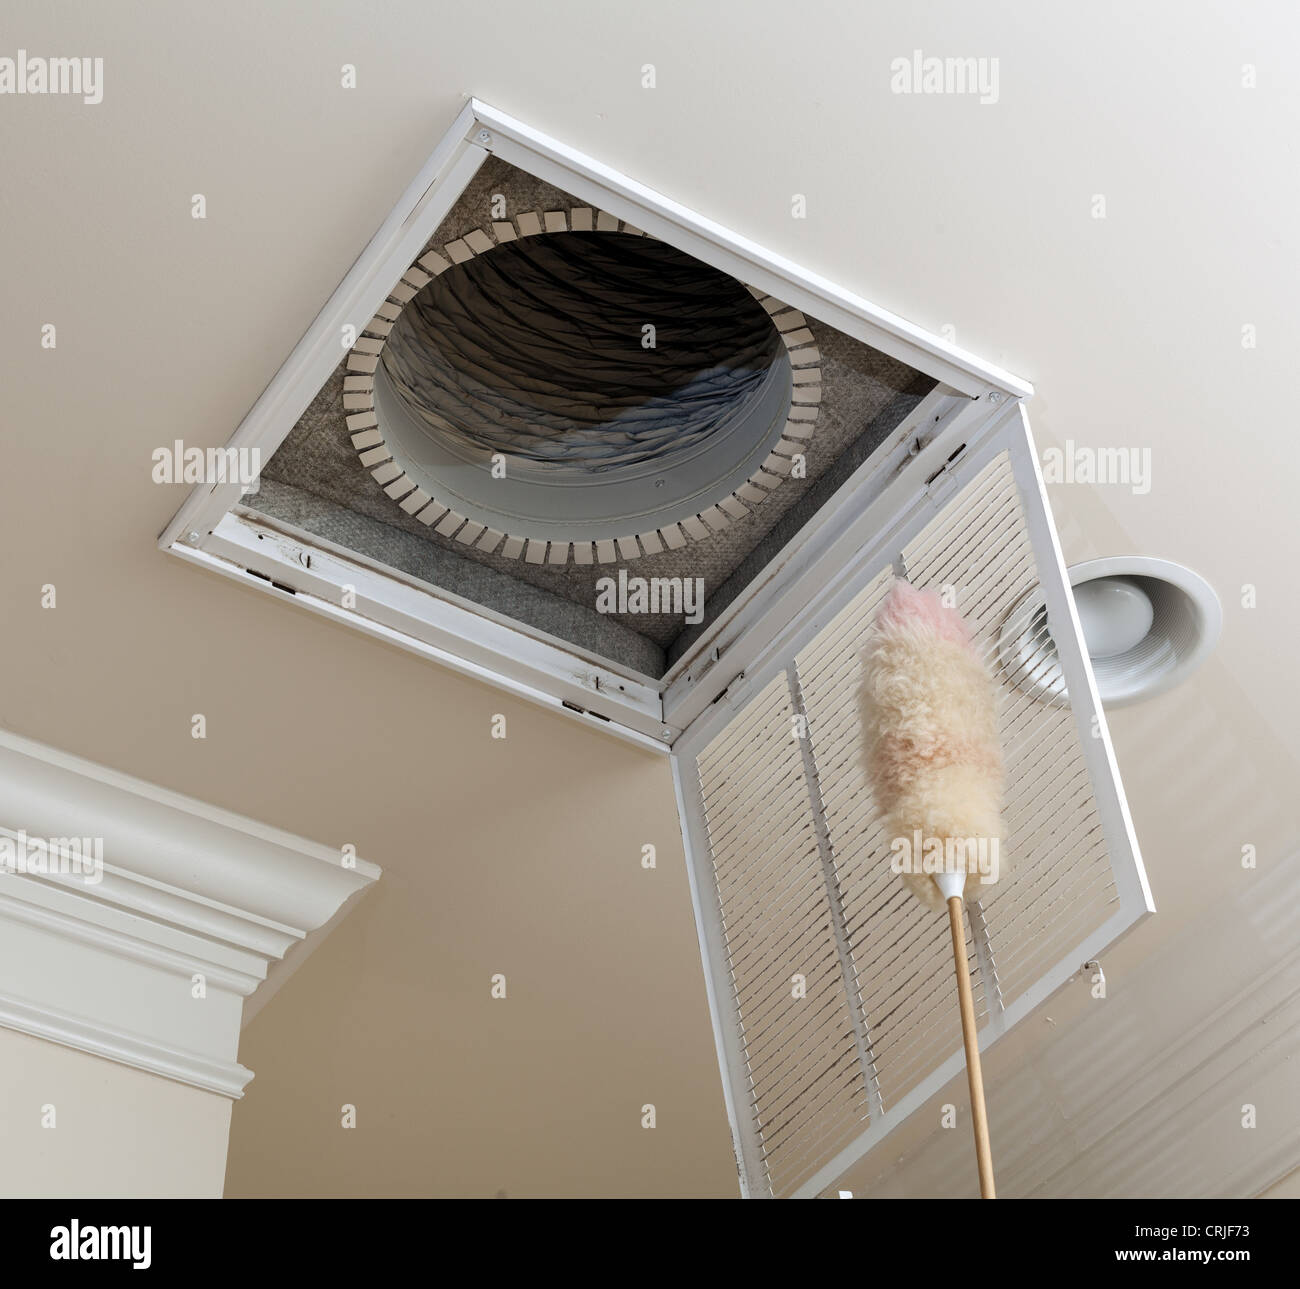 Die Entlüftung für Klimaanlage Filter in Decke des modernen Hauses abstauben Stockfoto